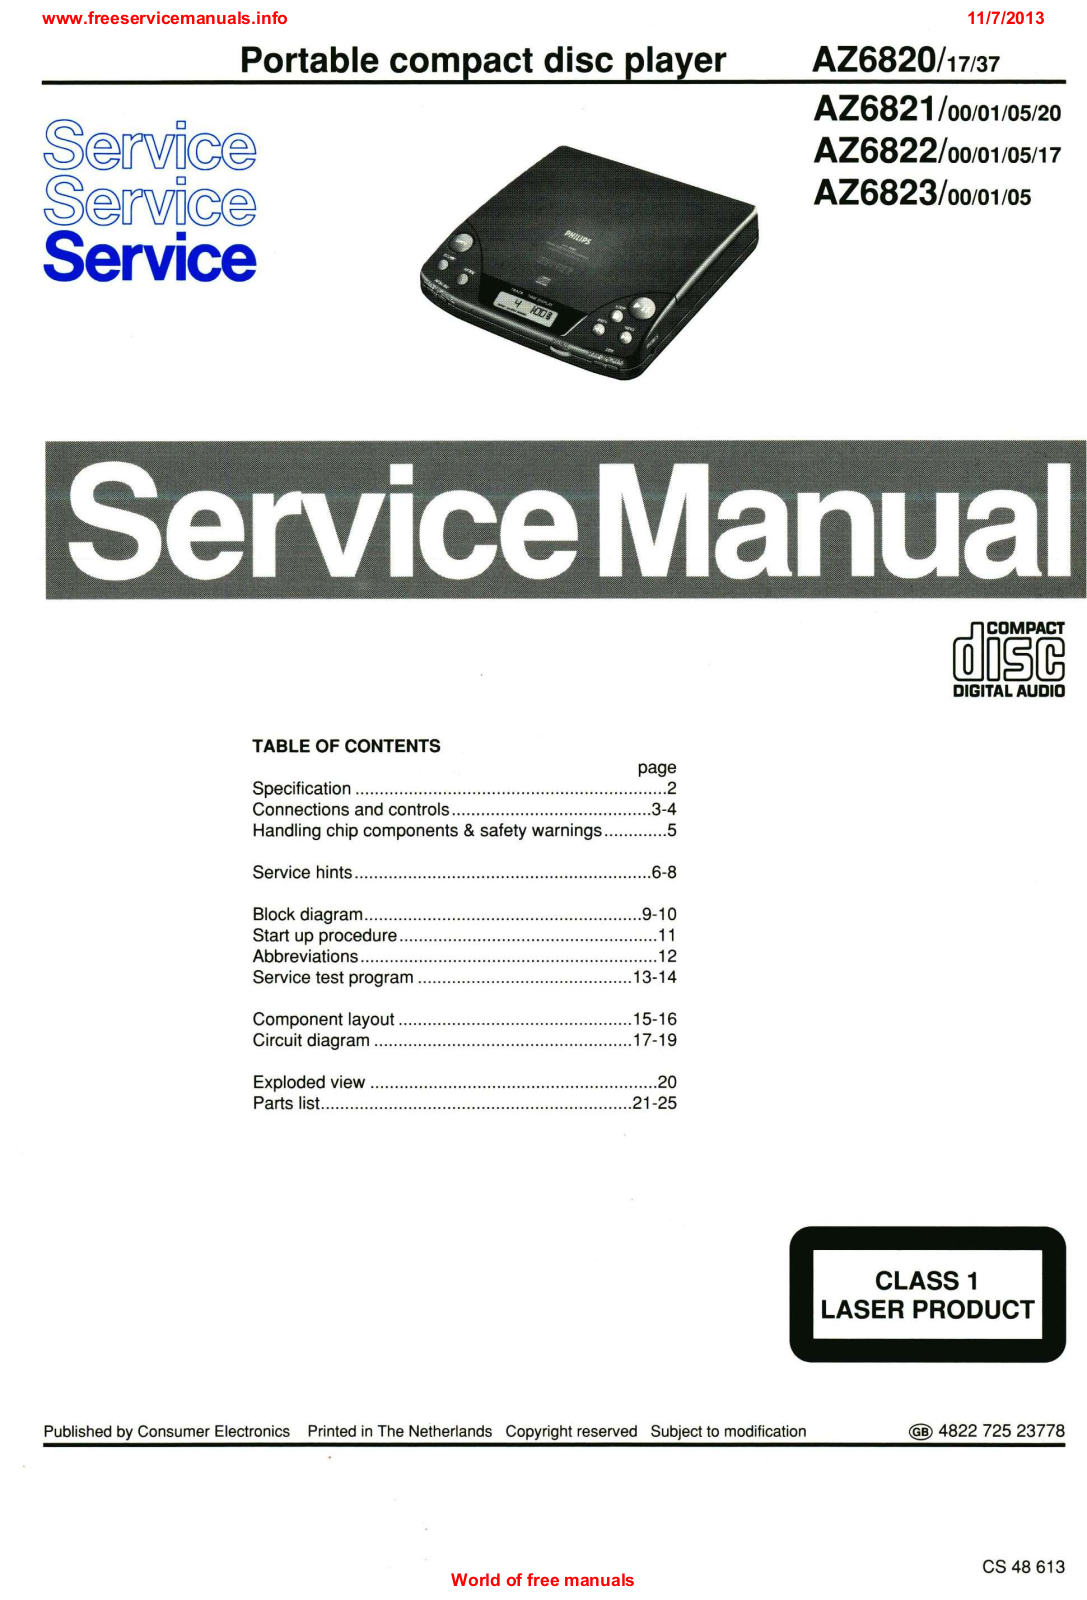 Philips az6820, az6821, az6822, az6823 Service Manual